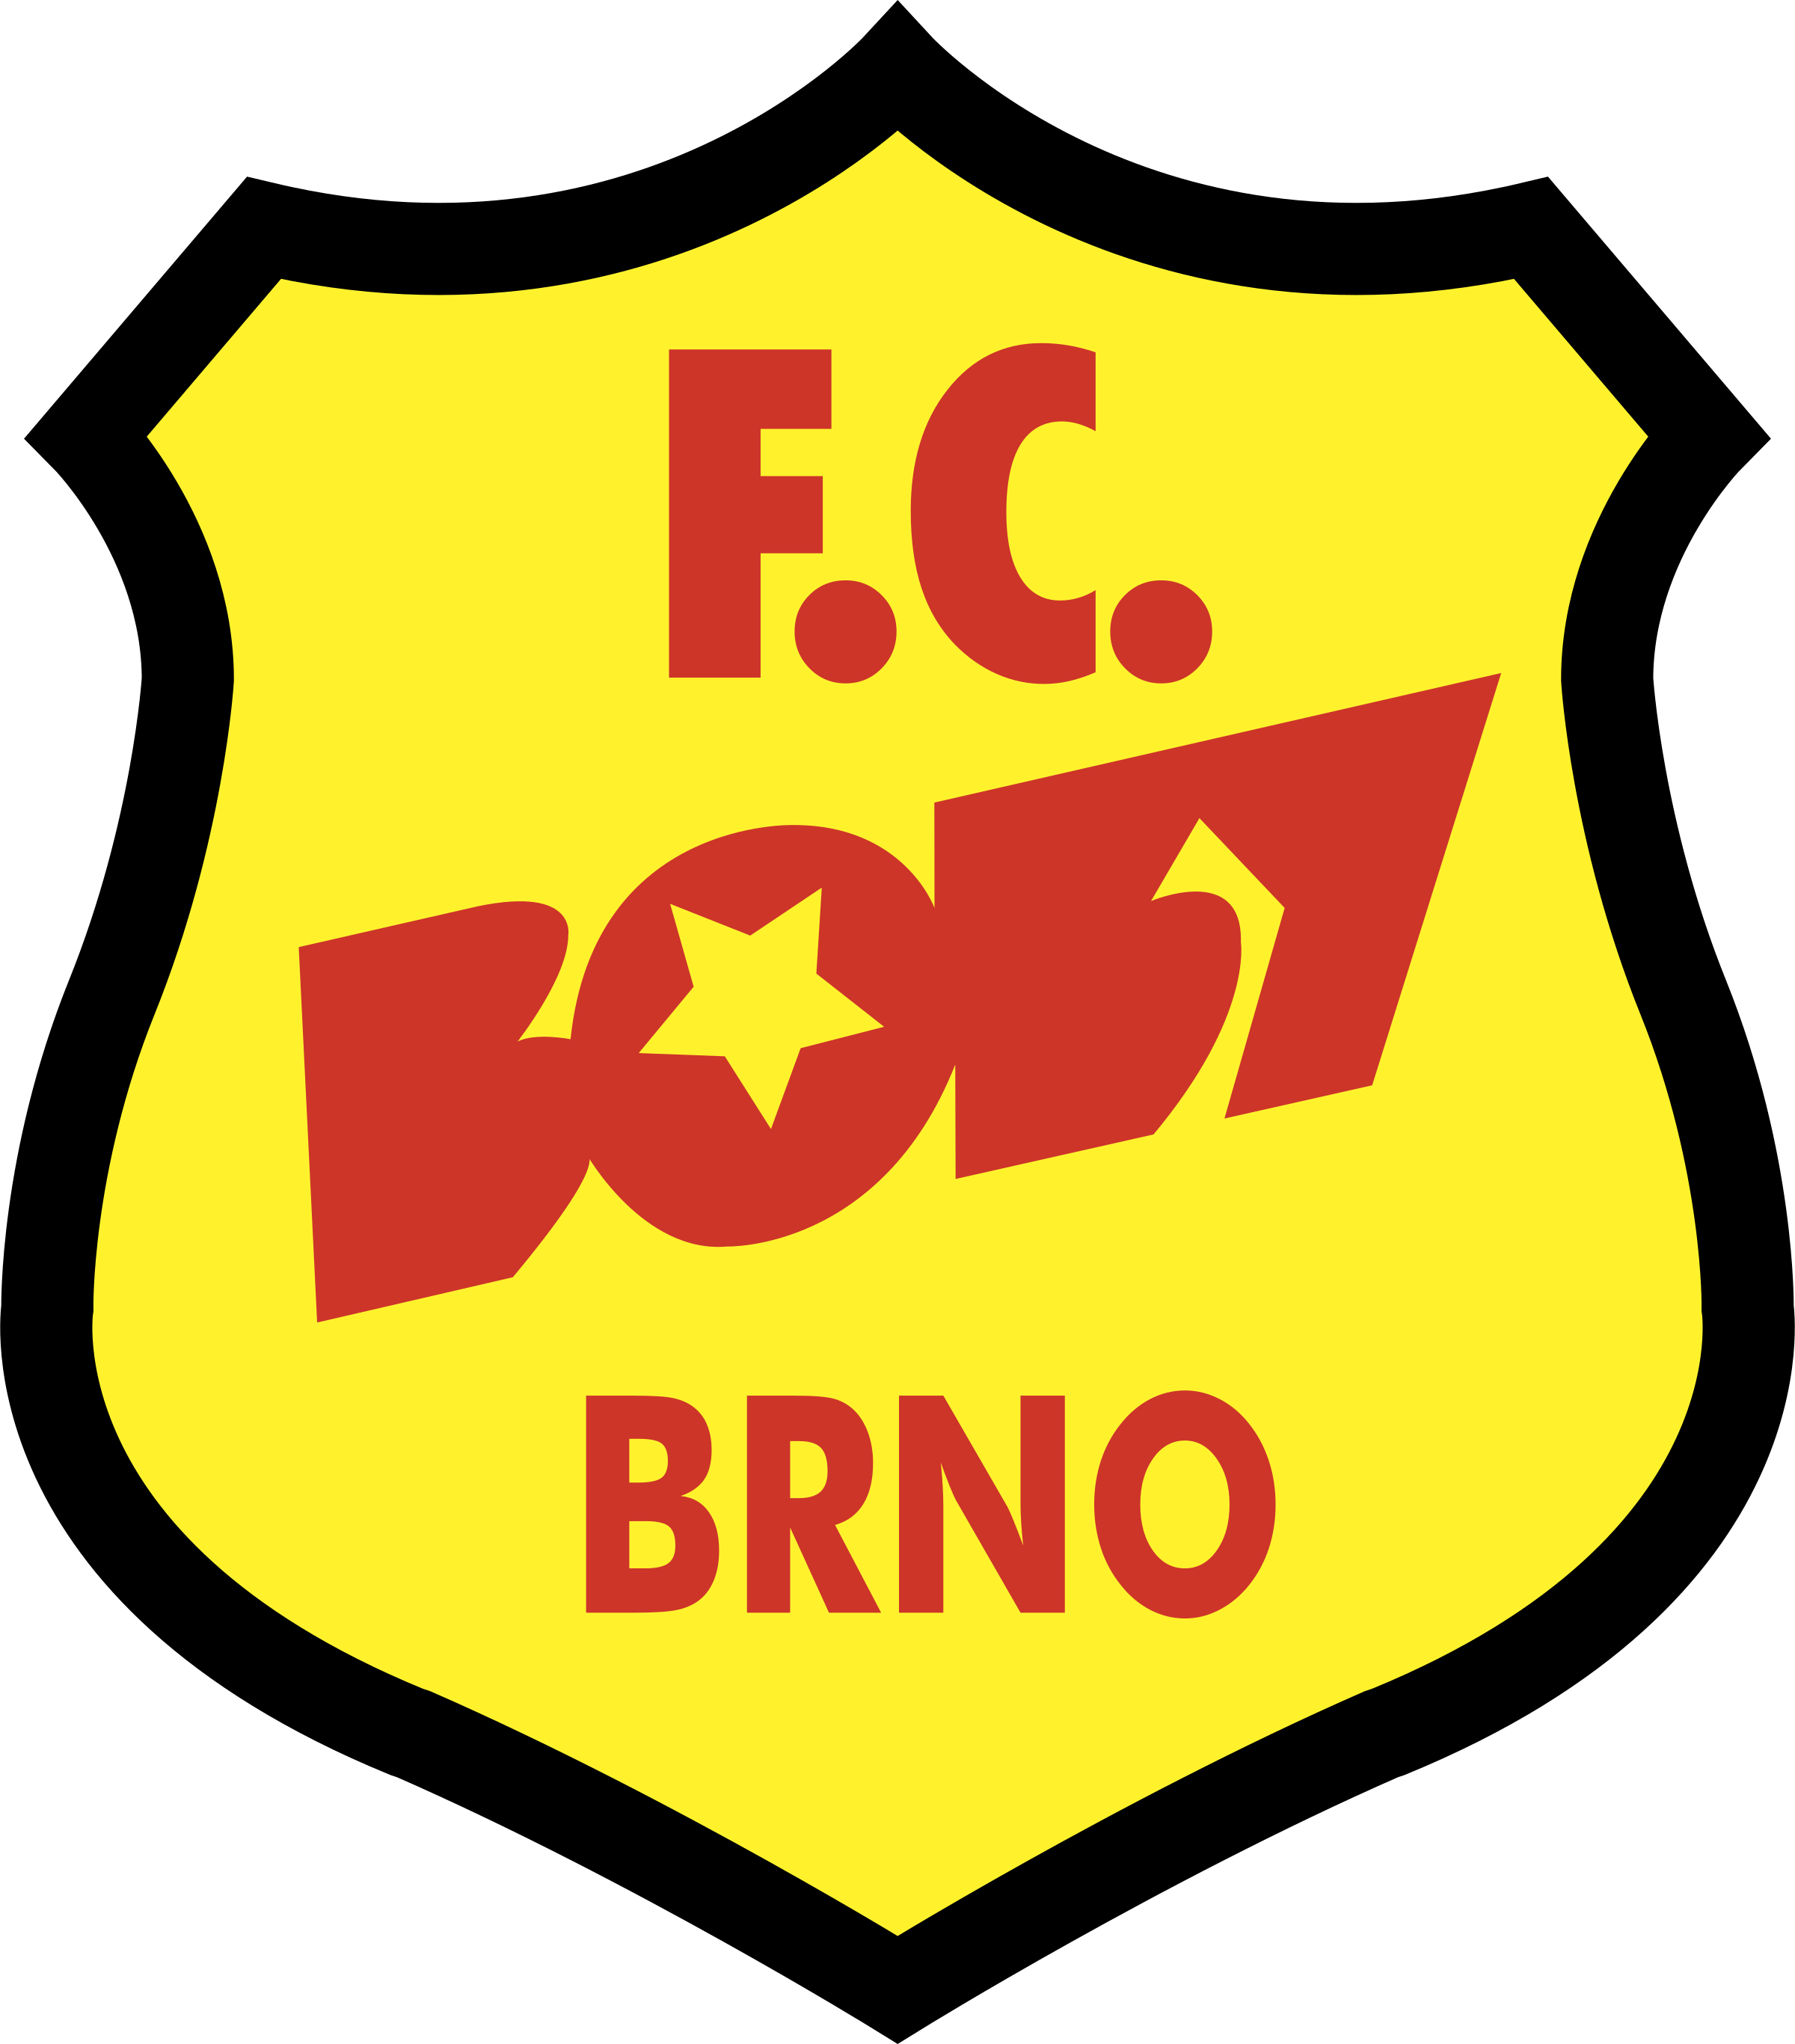 Brno Logo - boby brno Logo PNG Transparent & SVG Vector - Freebie Supply